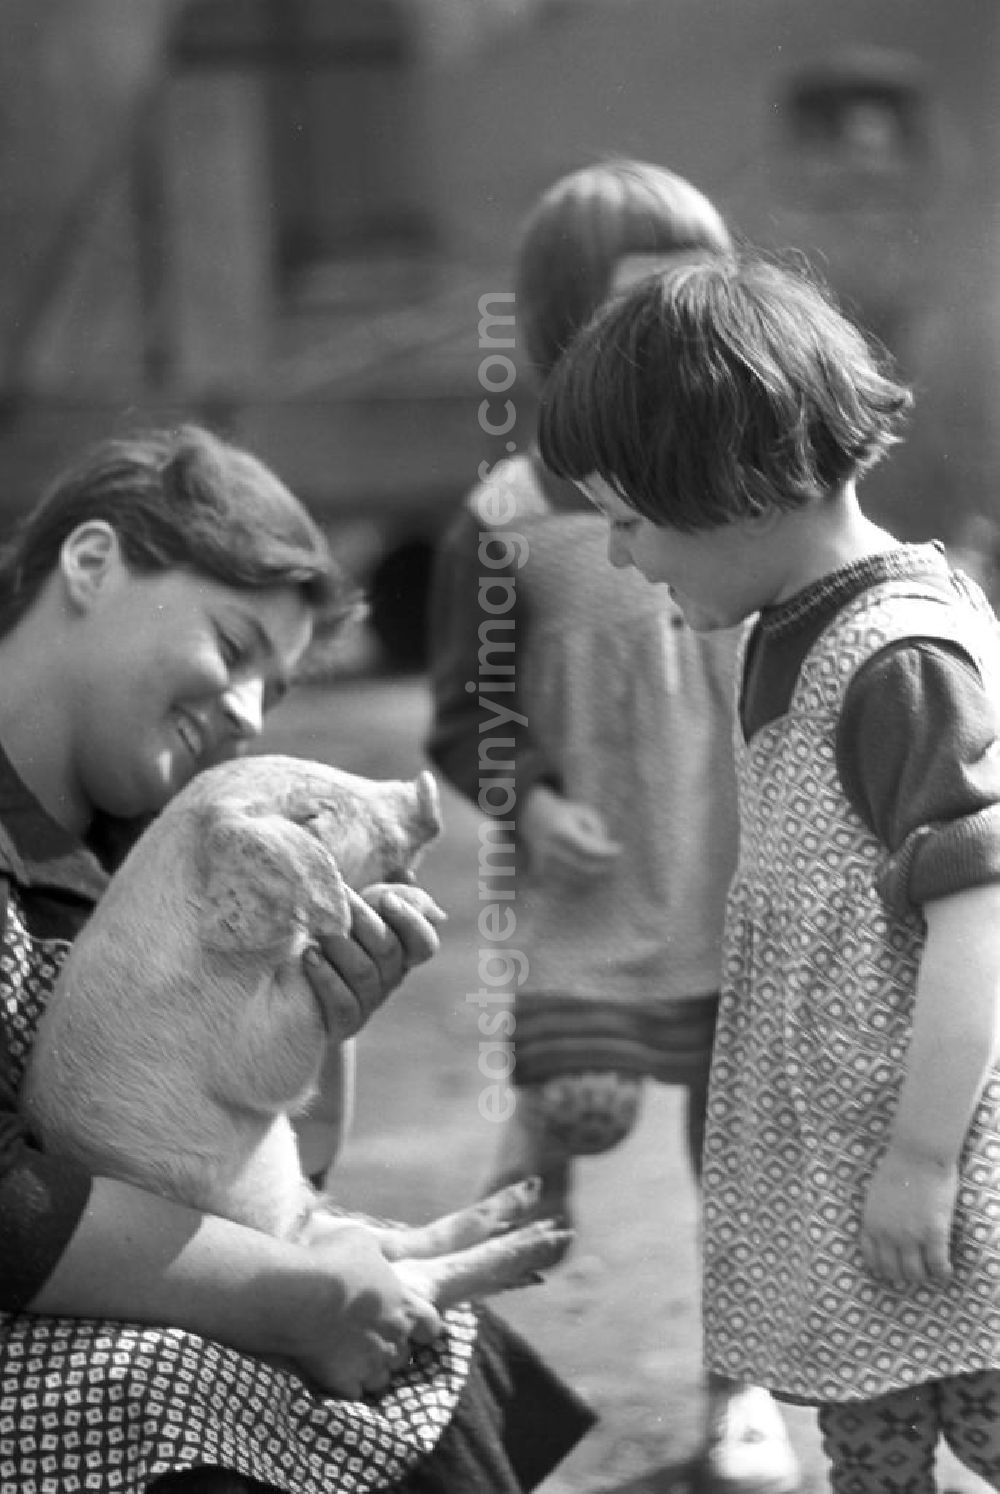 GDR picture archive: Pomßen - Auge in Auge mit einem Ferkel - Kinder vergnügen sich in dem Dorf Pomßen nahe Leipzig beim Spielen mit einem Ferkelchen.